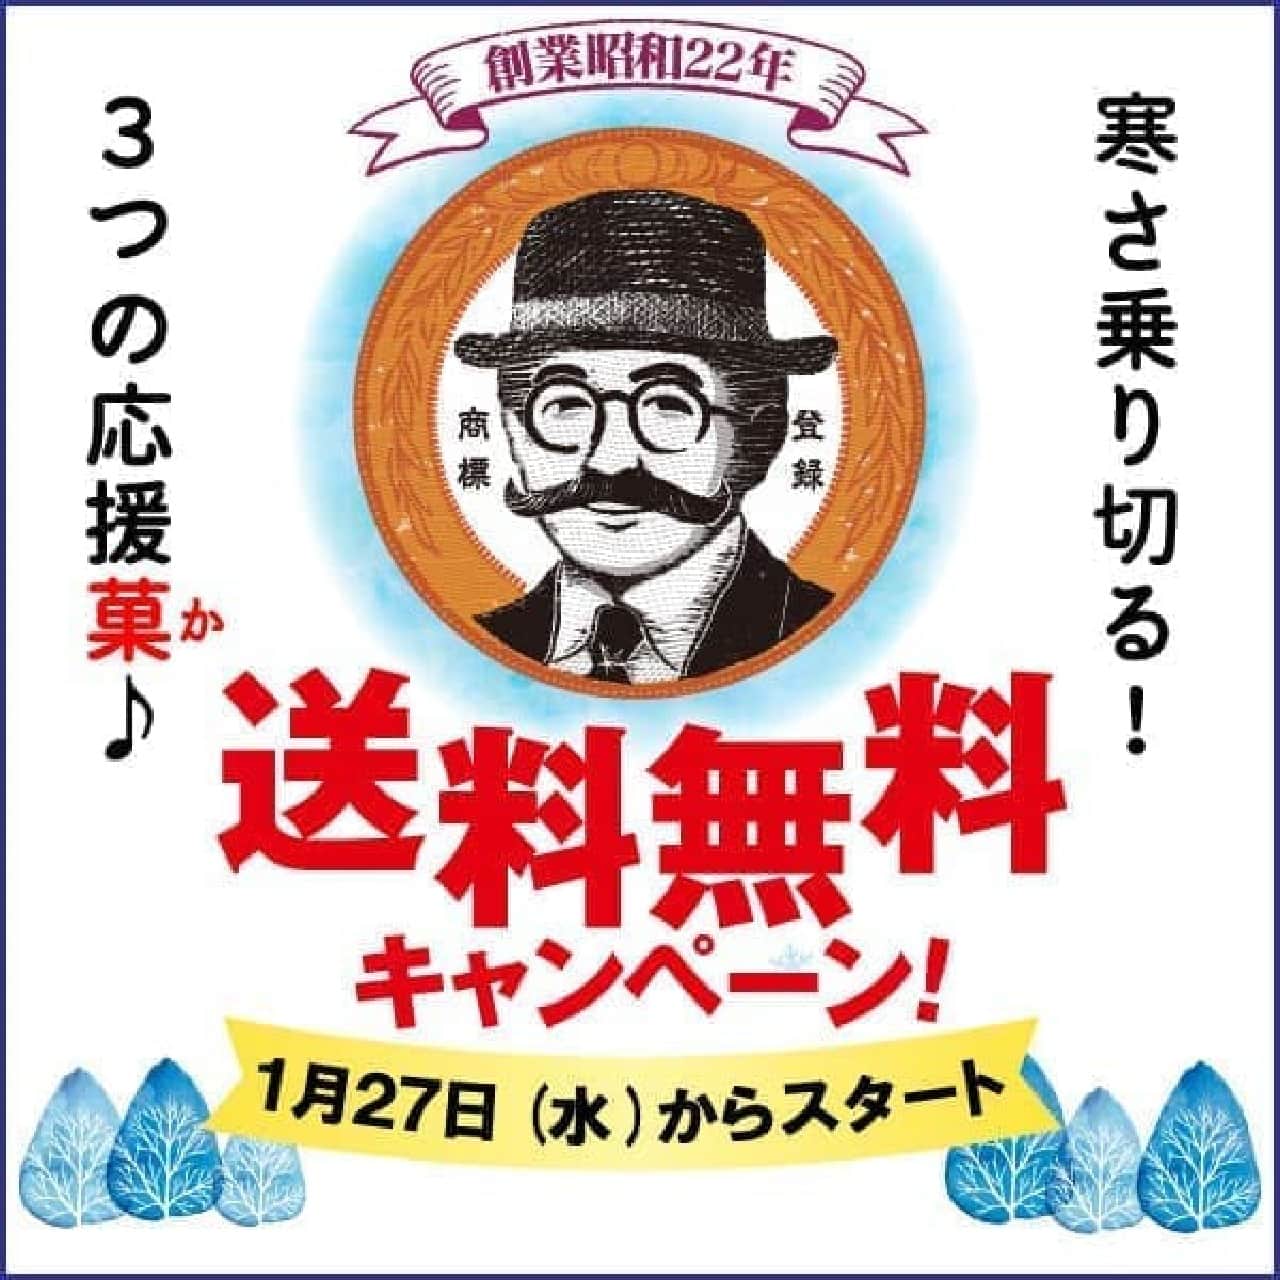 柳月 3つのお菓子セット送料無料キャンペーン